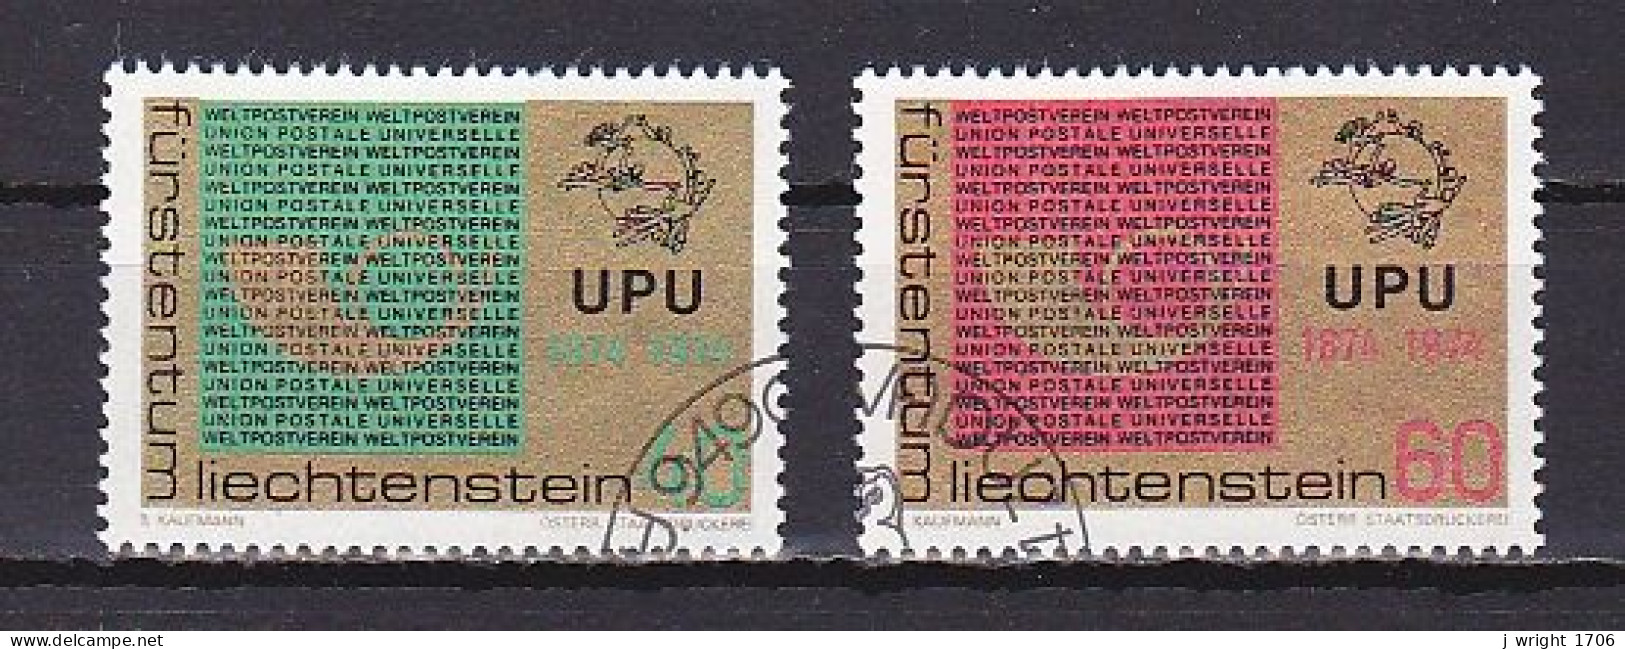 Liechtenstein, 1974, UPU Centenary, Set, CTO - Used Stamps